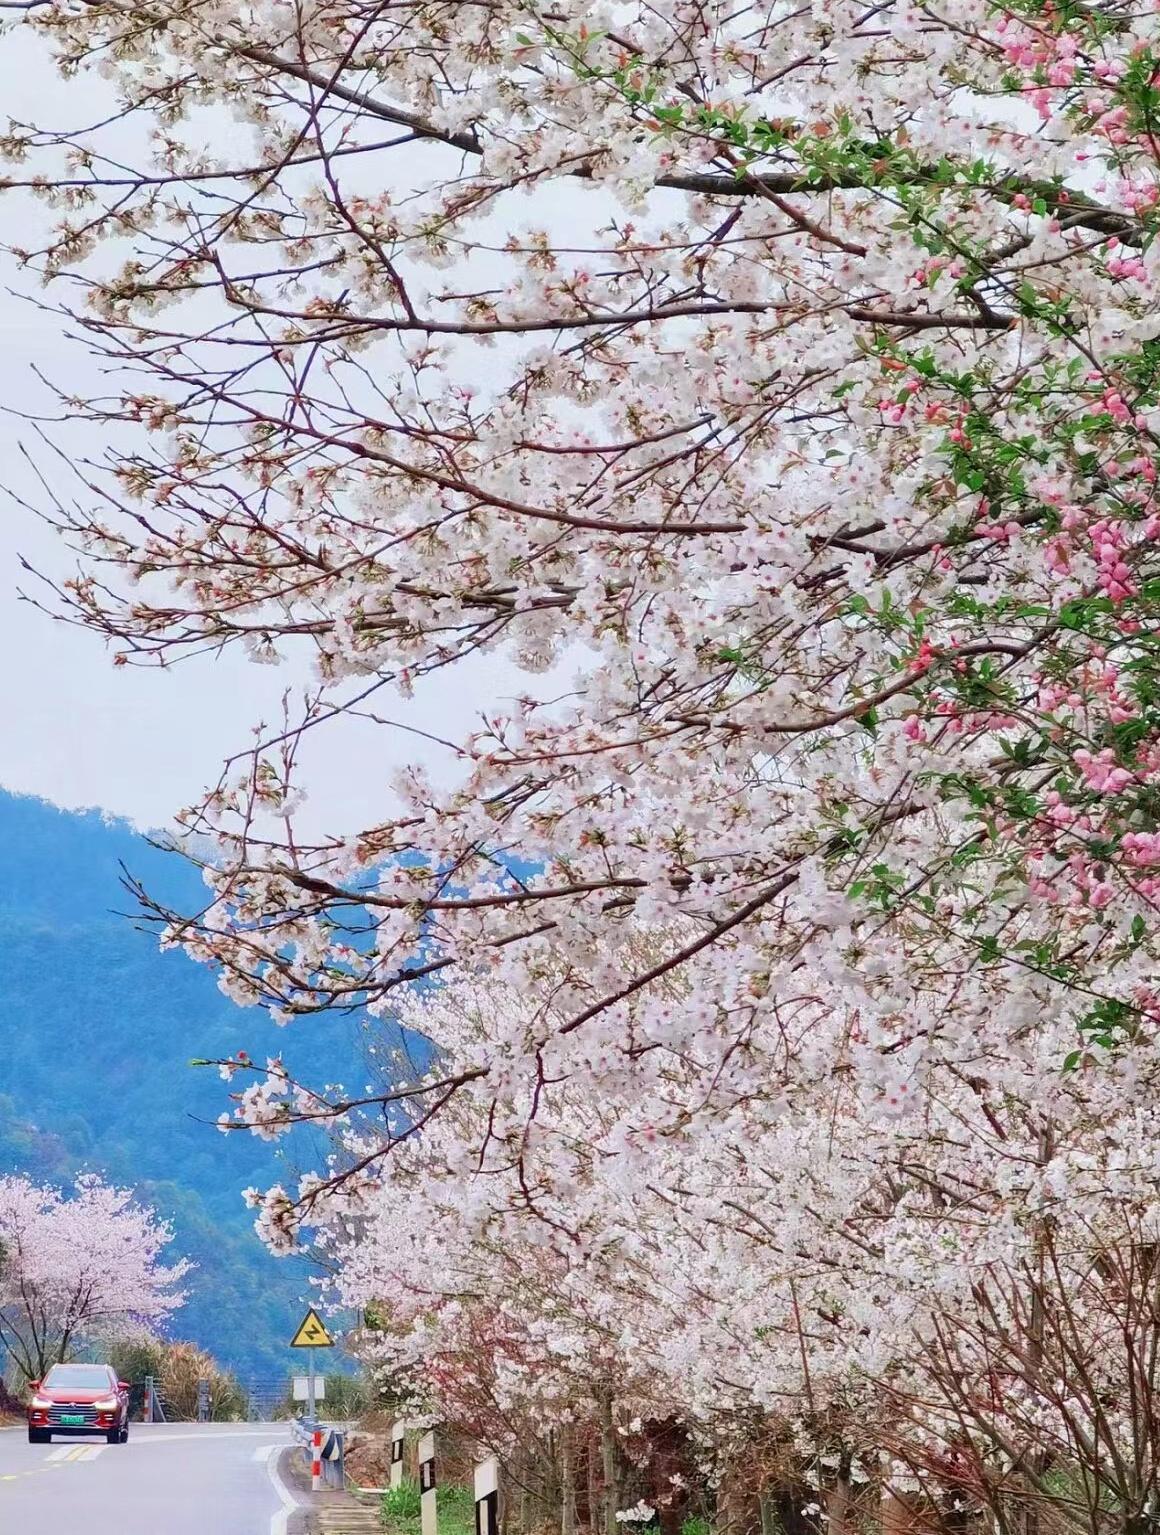 宁波樱花季:走这条线路,轻松避开人群 气温回升,宁波的各大景点的樱花